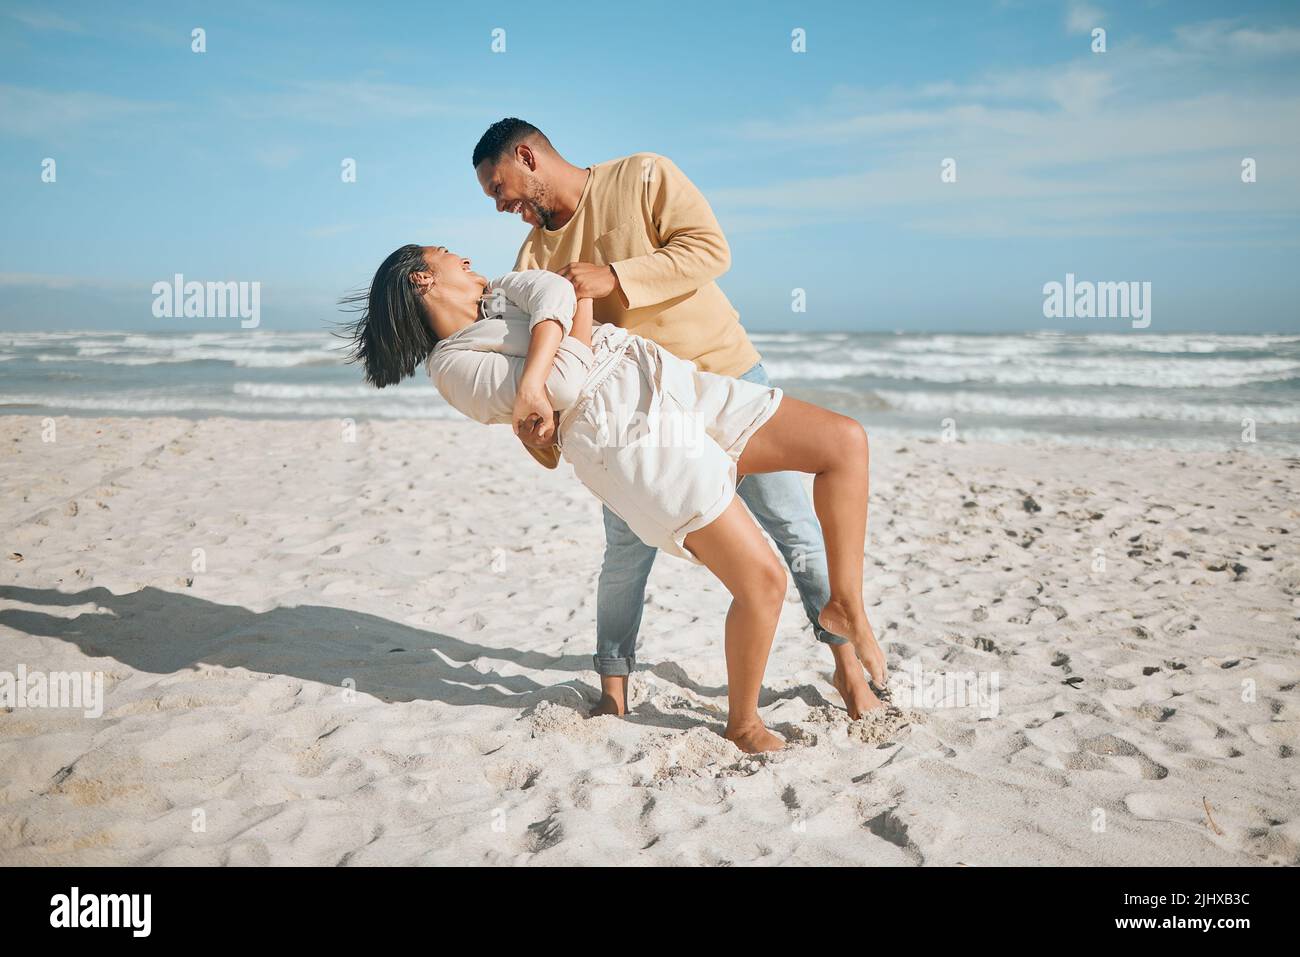 Amando giovane coppia mista gara ballare sulla spiaggia. Felice giovane uomo e donna innamorati godendo momento romantico durante la luna di miele al mare Foto Stock